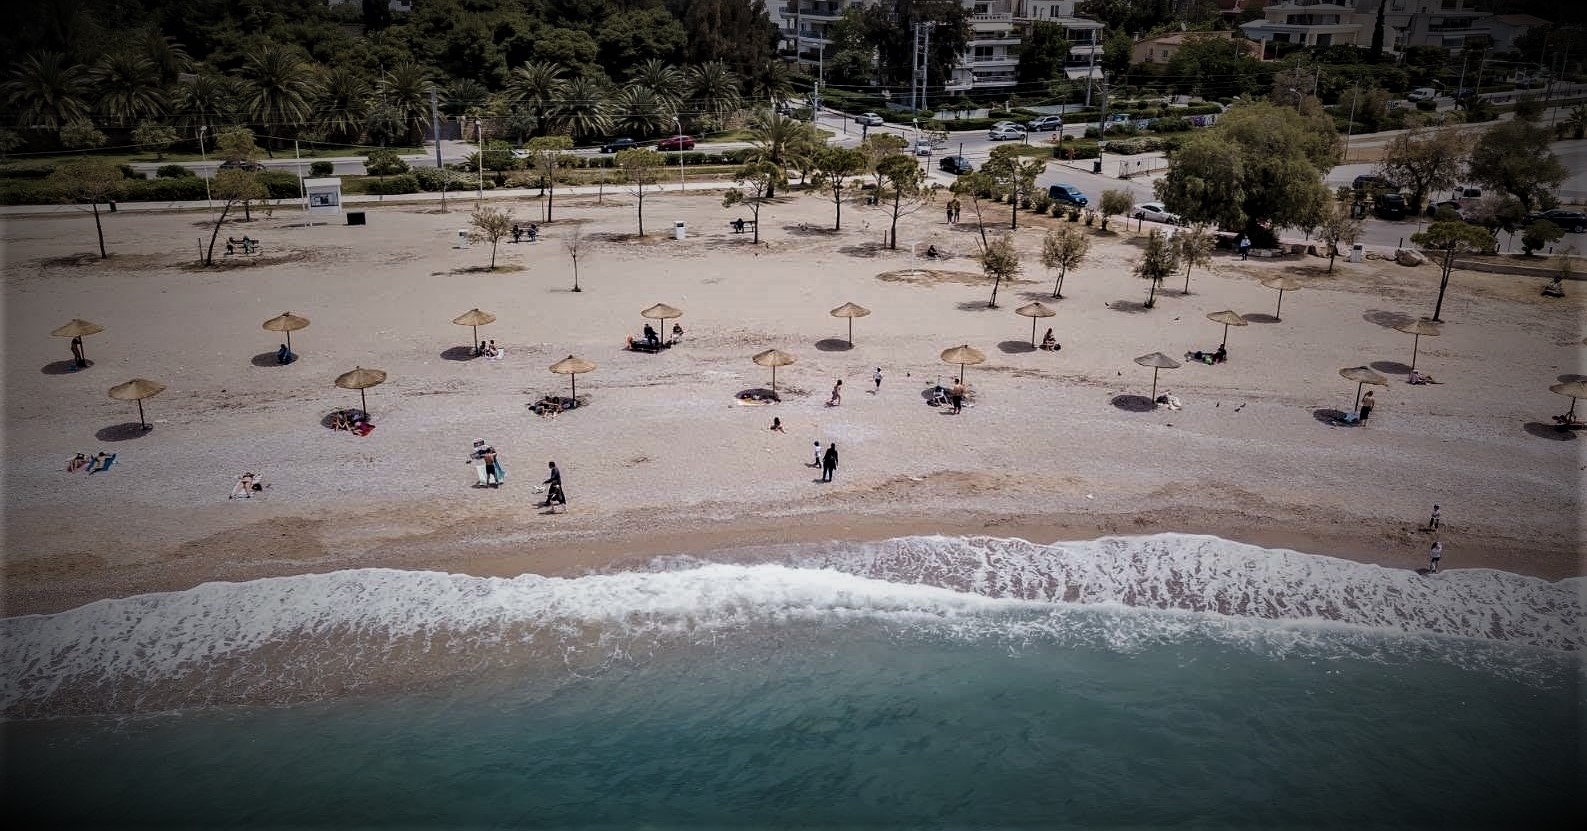 Παραλία Γλυφάδας: Η πρώτη δυστοπική παραλία της Ελλάδας με… drone και αποστάσεις ασφαλείας είναι γεγονός